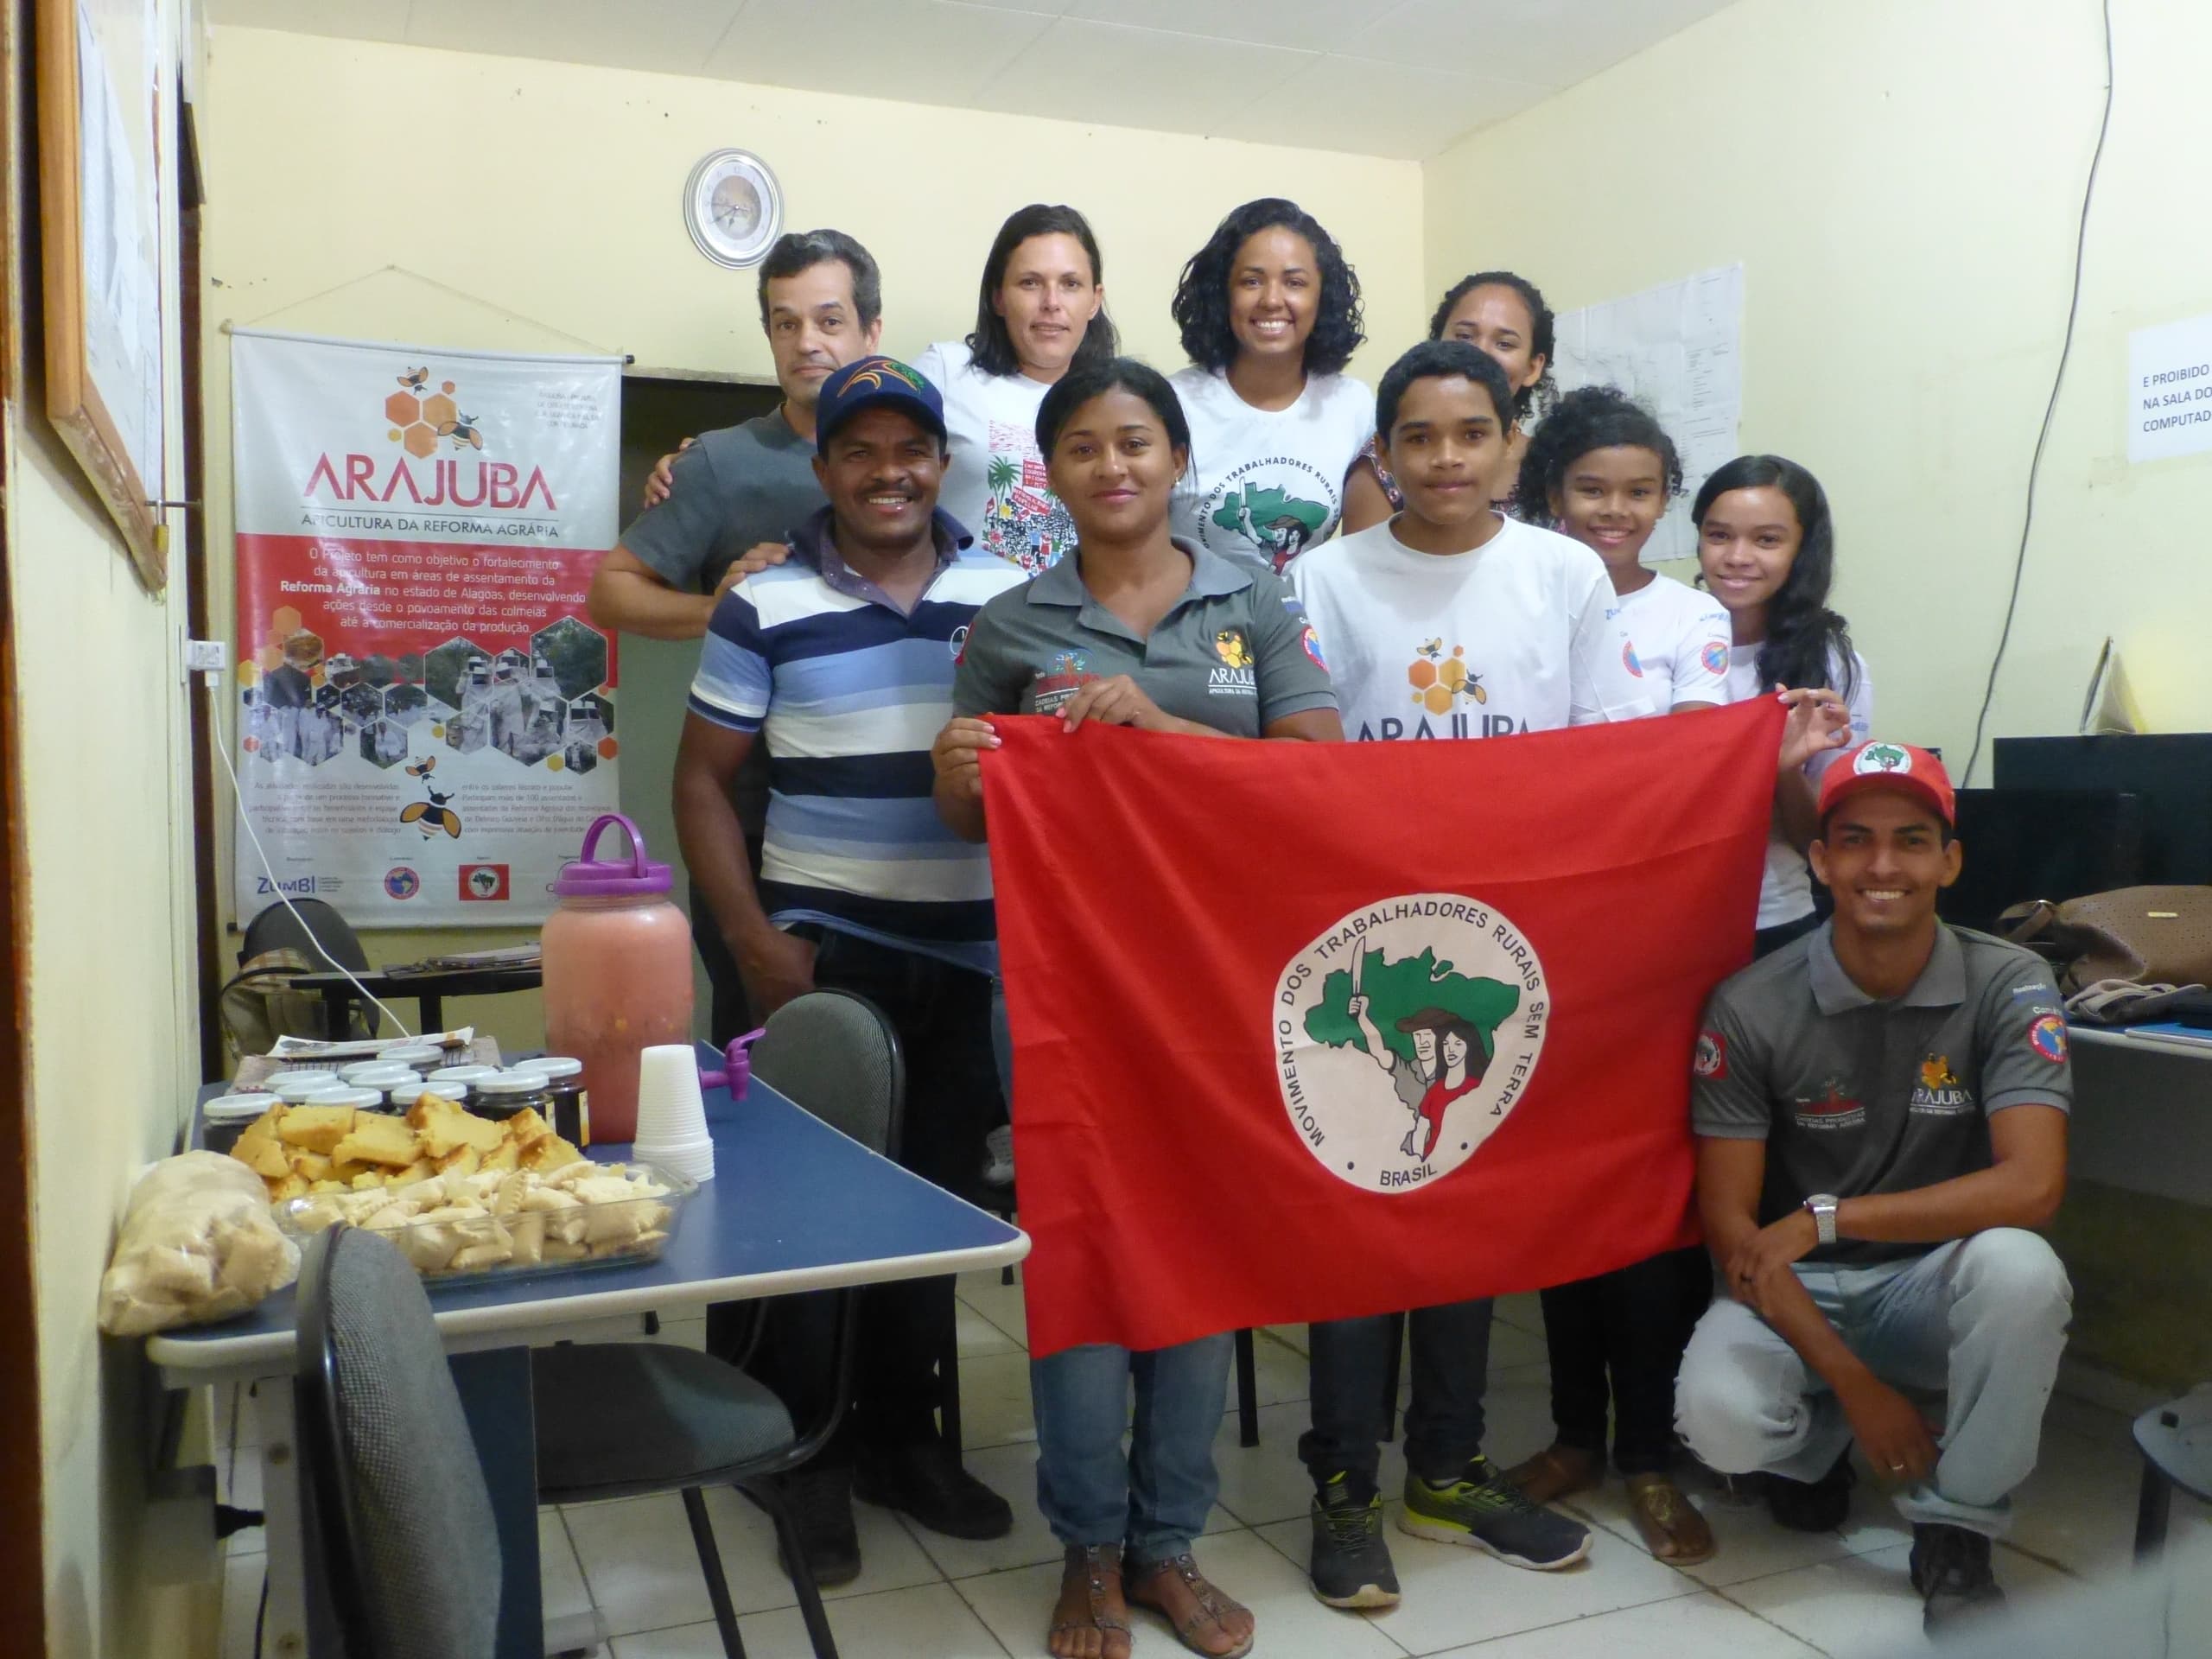 Jeunes volontaires qui luttent contre la faim et les inégalités, le Mouvement des Sans Terre au Brésil, partenaire du CCFD-Terre Solidaire.